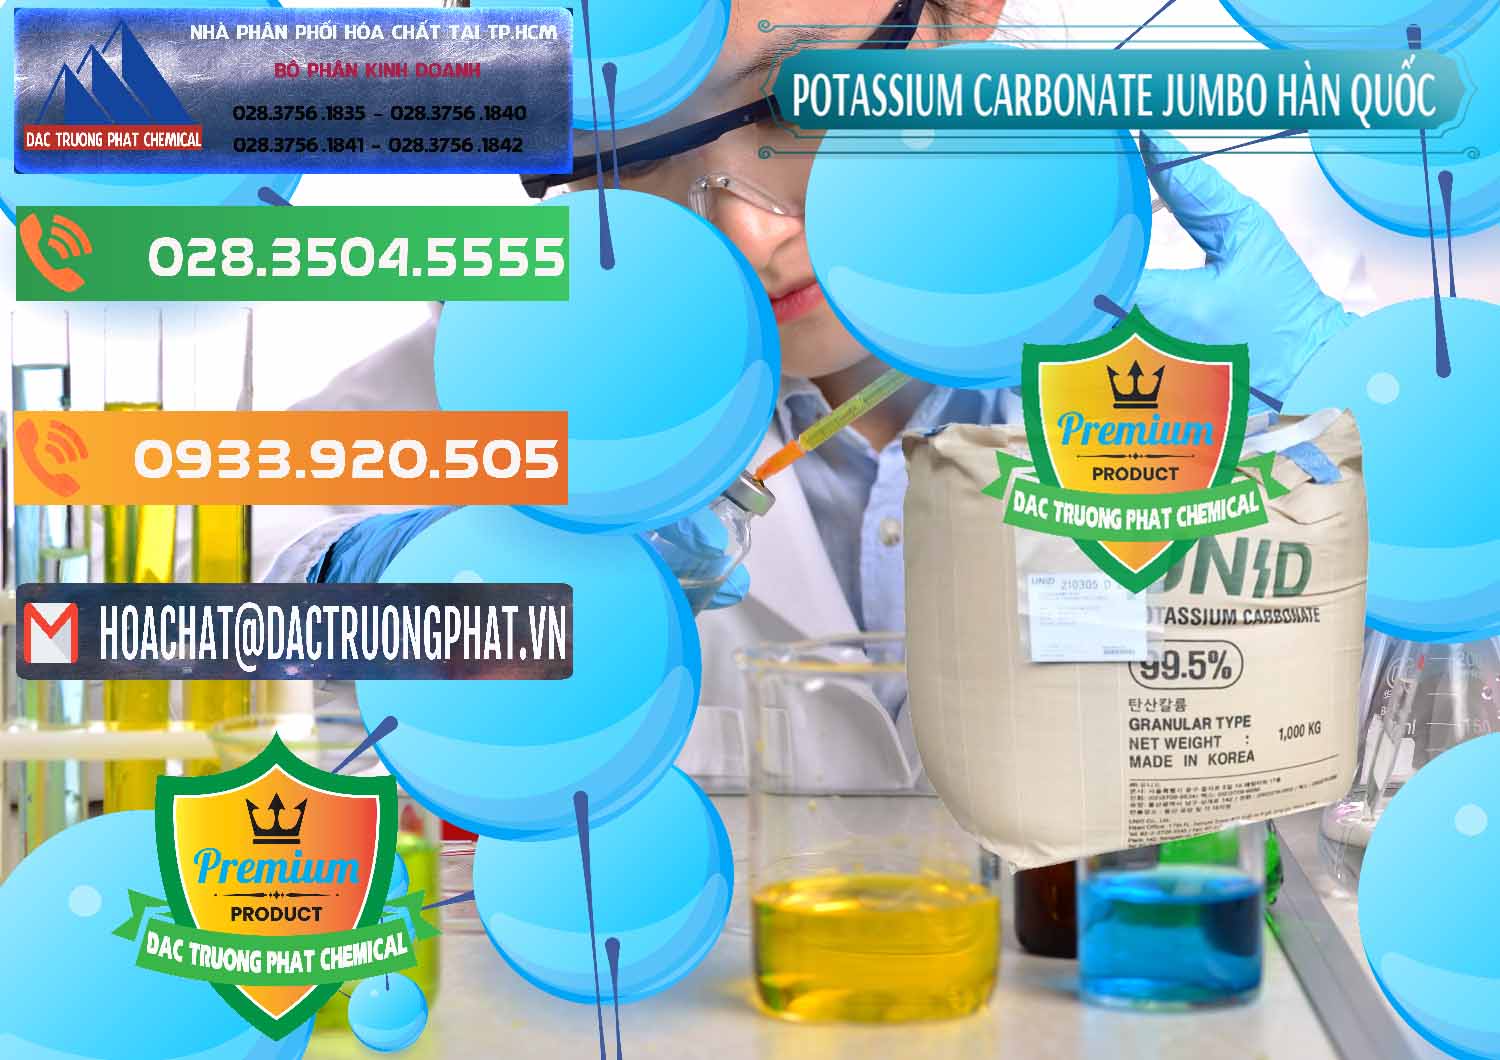 Nơi chuyên cung ứng và bán K2Co3 – Potassium Carbonate Jumbo Bành Unid Hàn Quốc Korea - 0434 - Cty bán & phân phối hóa chất tại TP.HCM - hoachatxulynuoc.com.vn